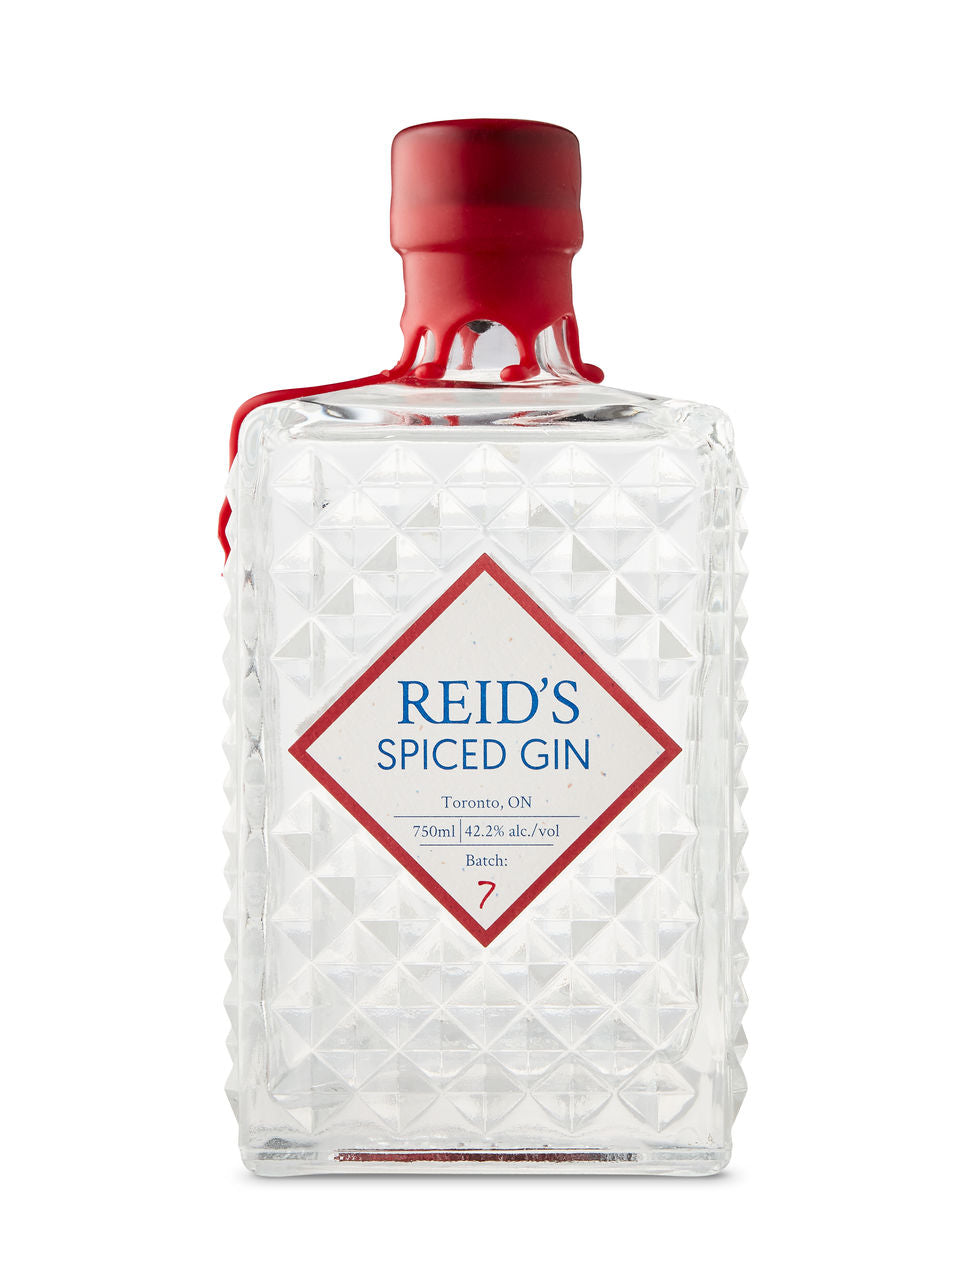 Reid's Spiced Gin 750 ml bottle